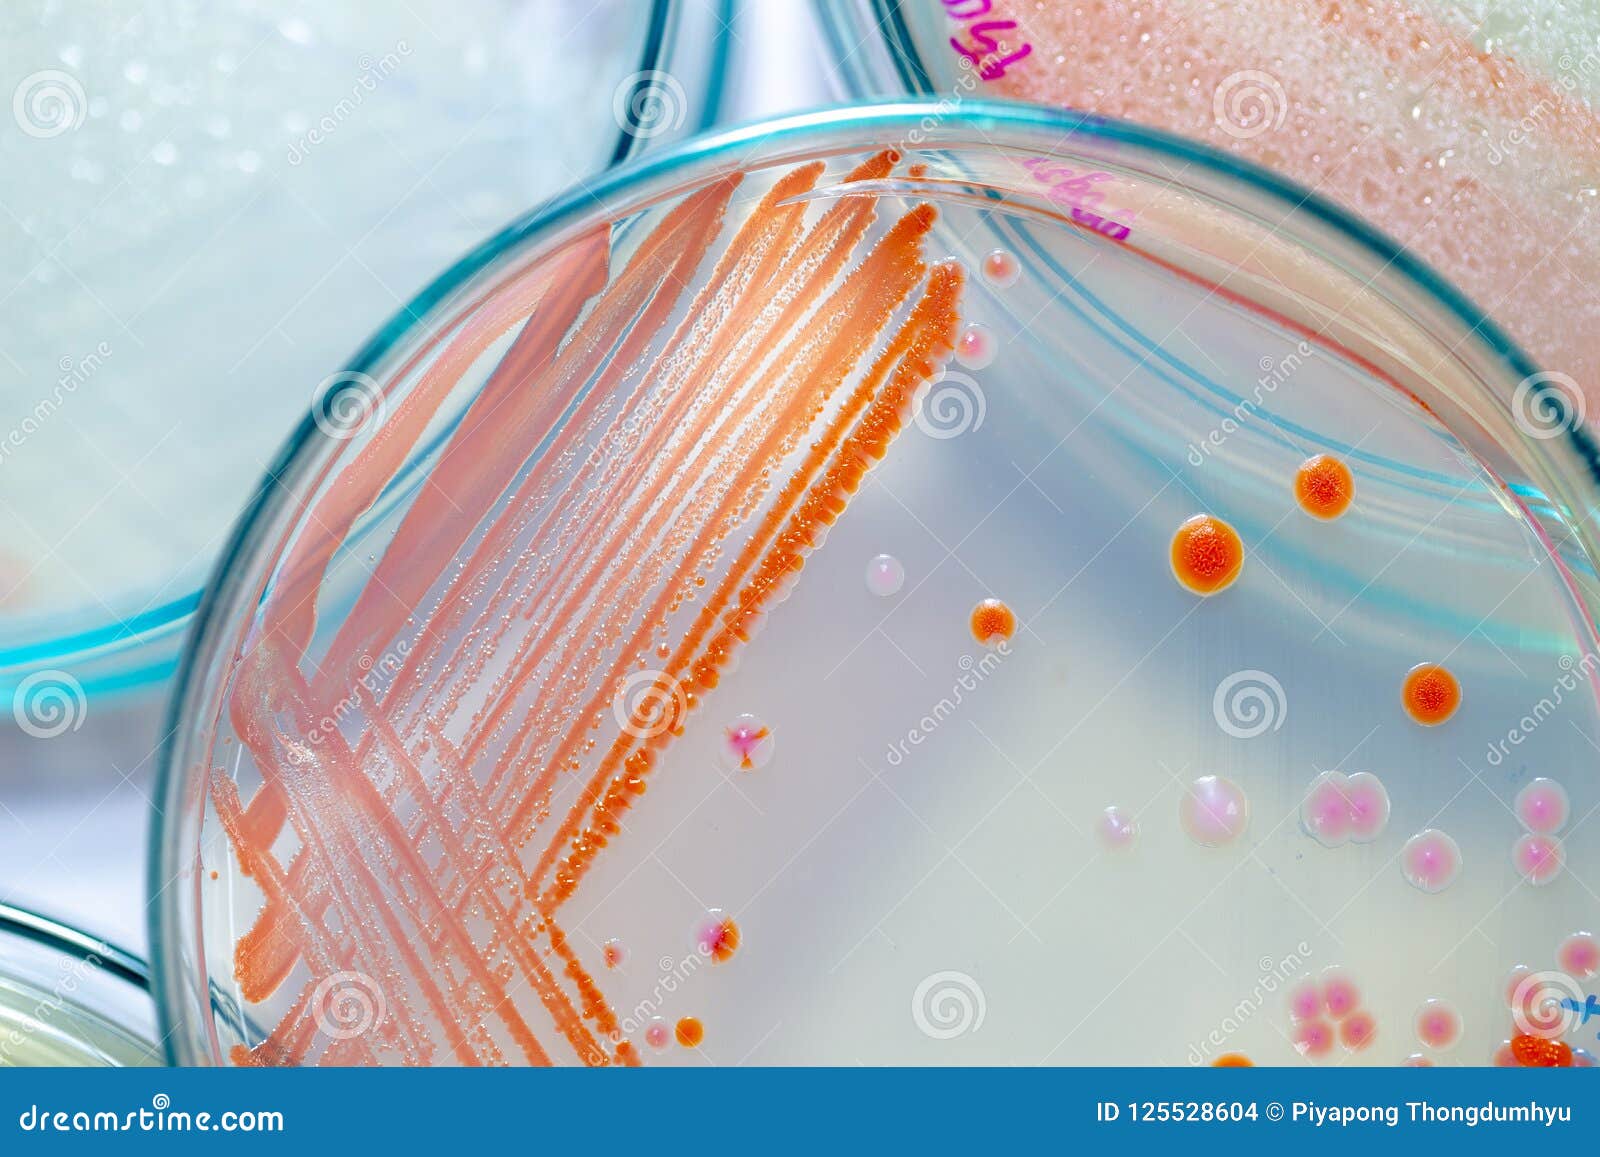 细菌革兰氏染色手绘图-图库-五毛网